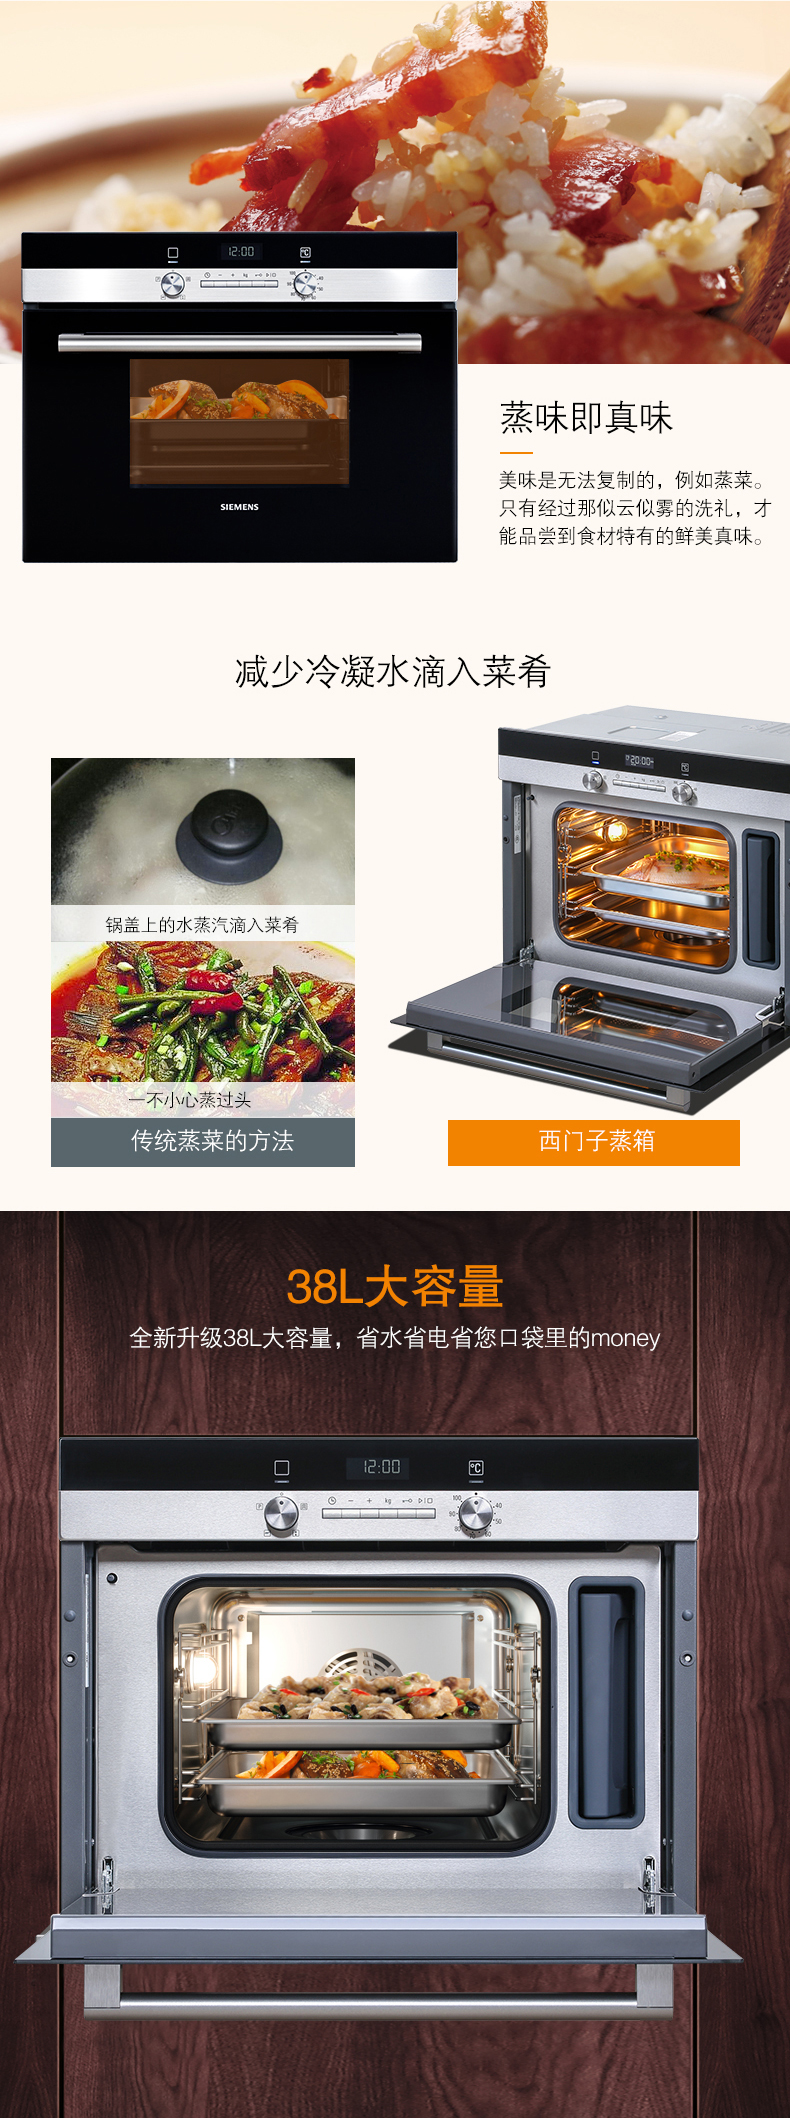 西门子(siemens)hb24d553w 法国进口嵌入式蒸箱 38l 自动烹饪程序蒸汽